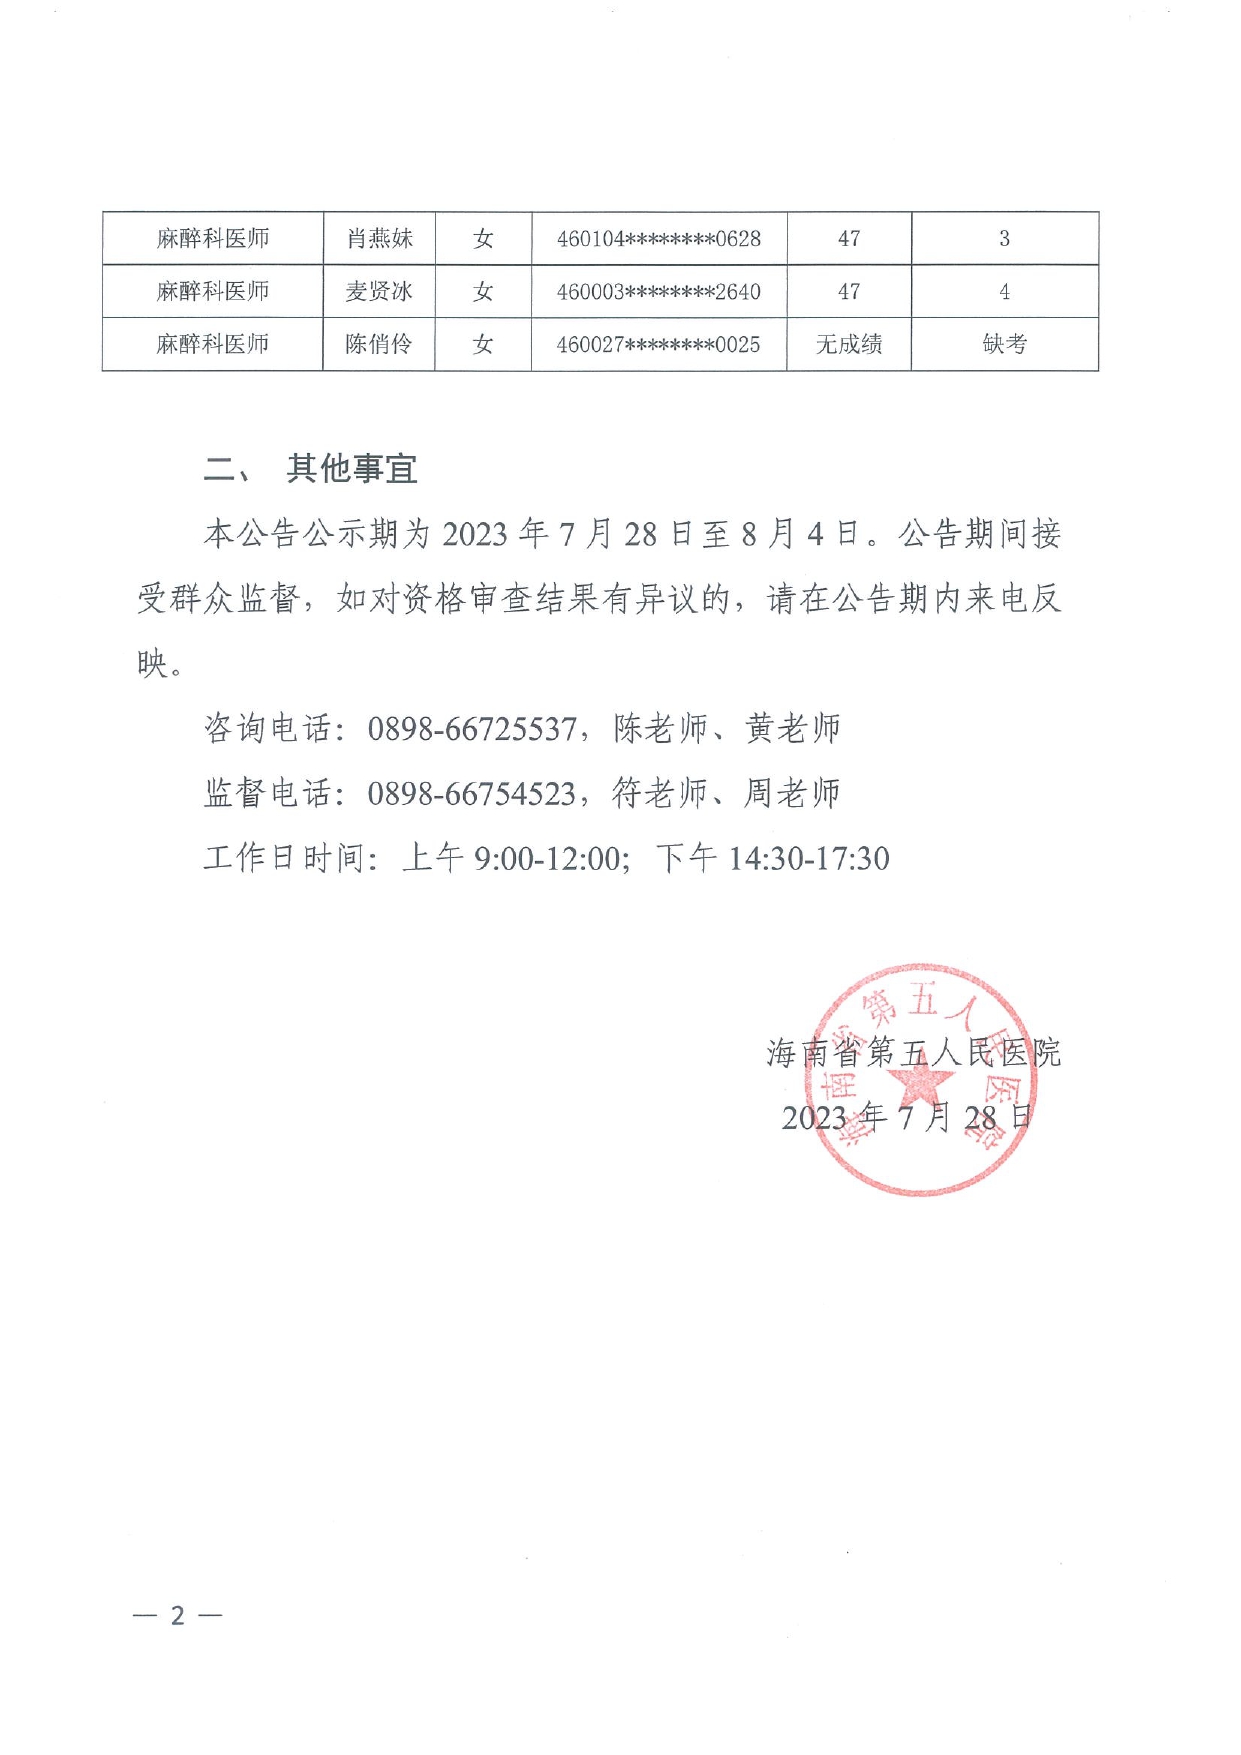 海南省第五人民医院2023年公开招聘工作人员笔试成绩公告_page-0002.jpg